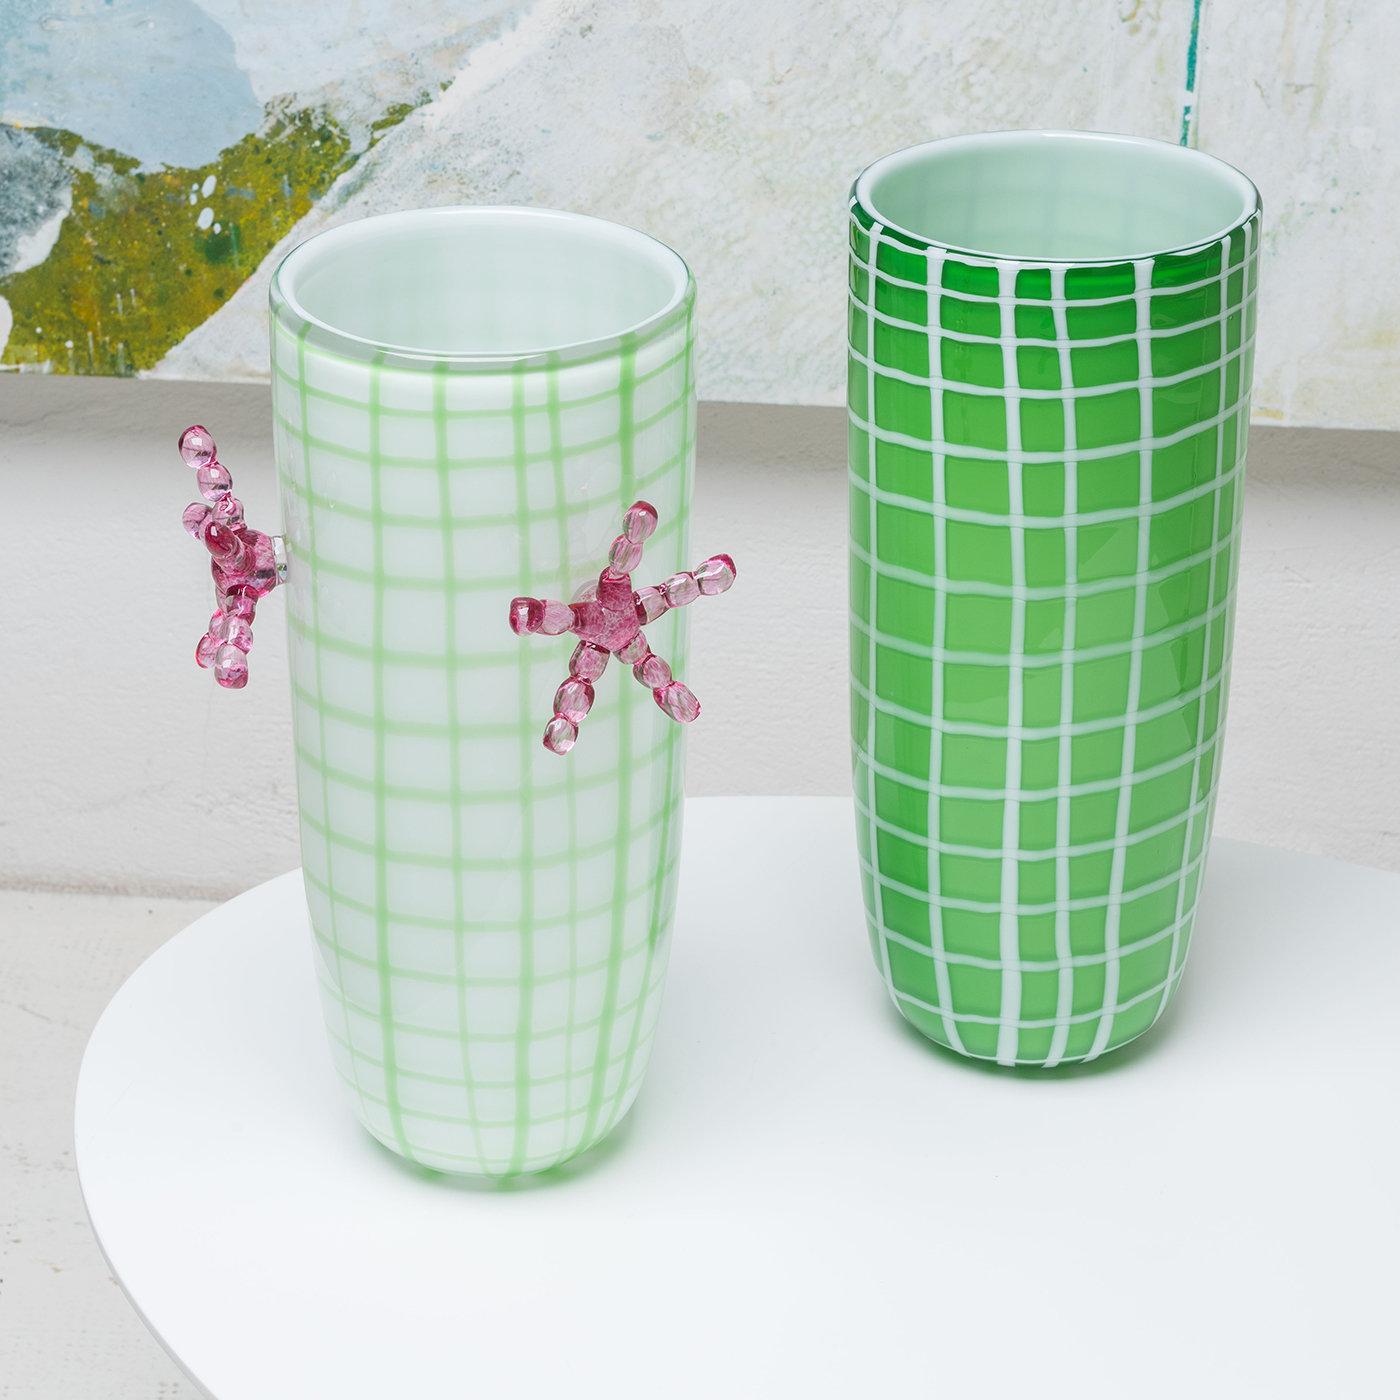 Conçu par Elena Cutolo et fabriqué en verre précieux de Murano soufflé à la bouche en édition limitée, ce vase allongé est un exemple étonnant de la combinaison de l'artisanat traditionnel et d'une allure rétro-chic inspirée du style des années 60.